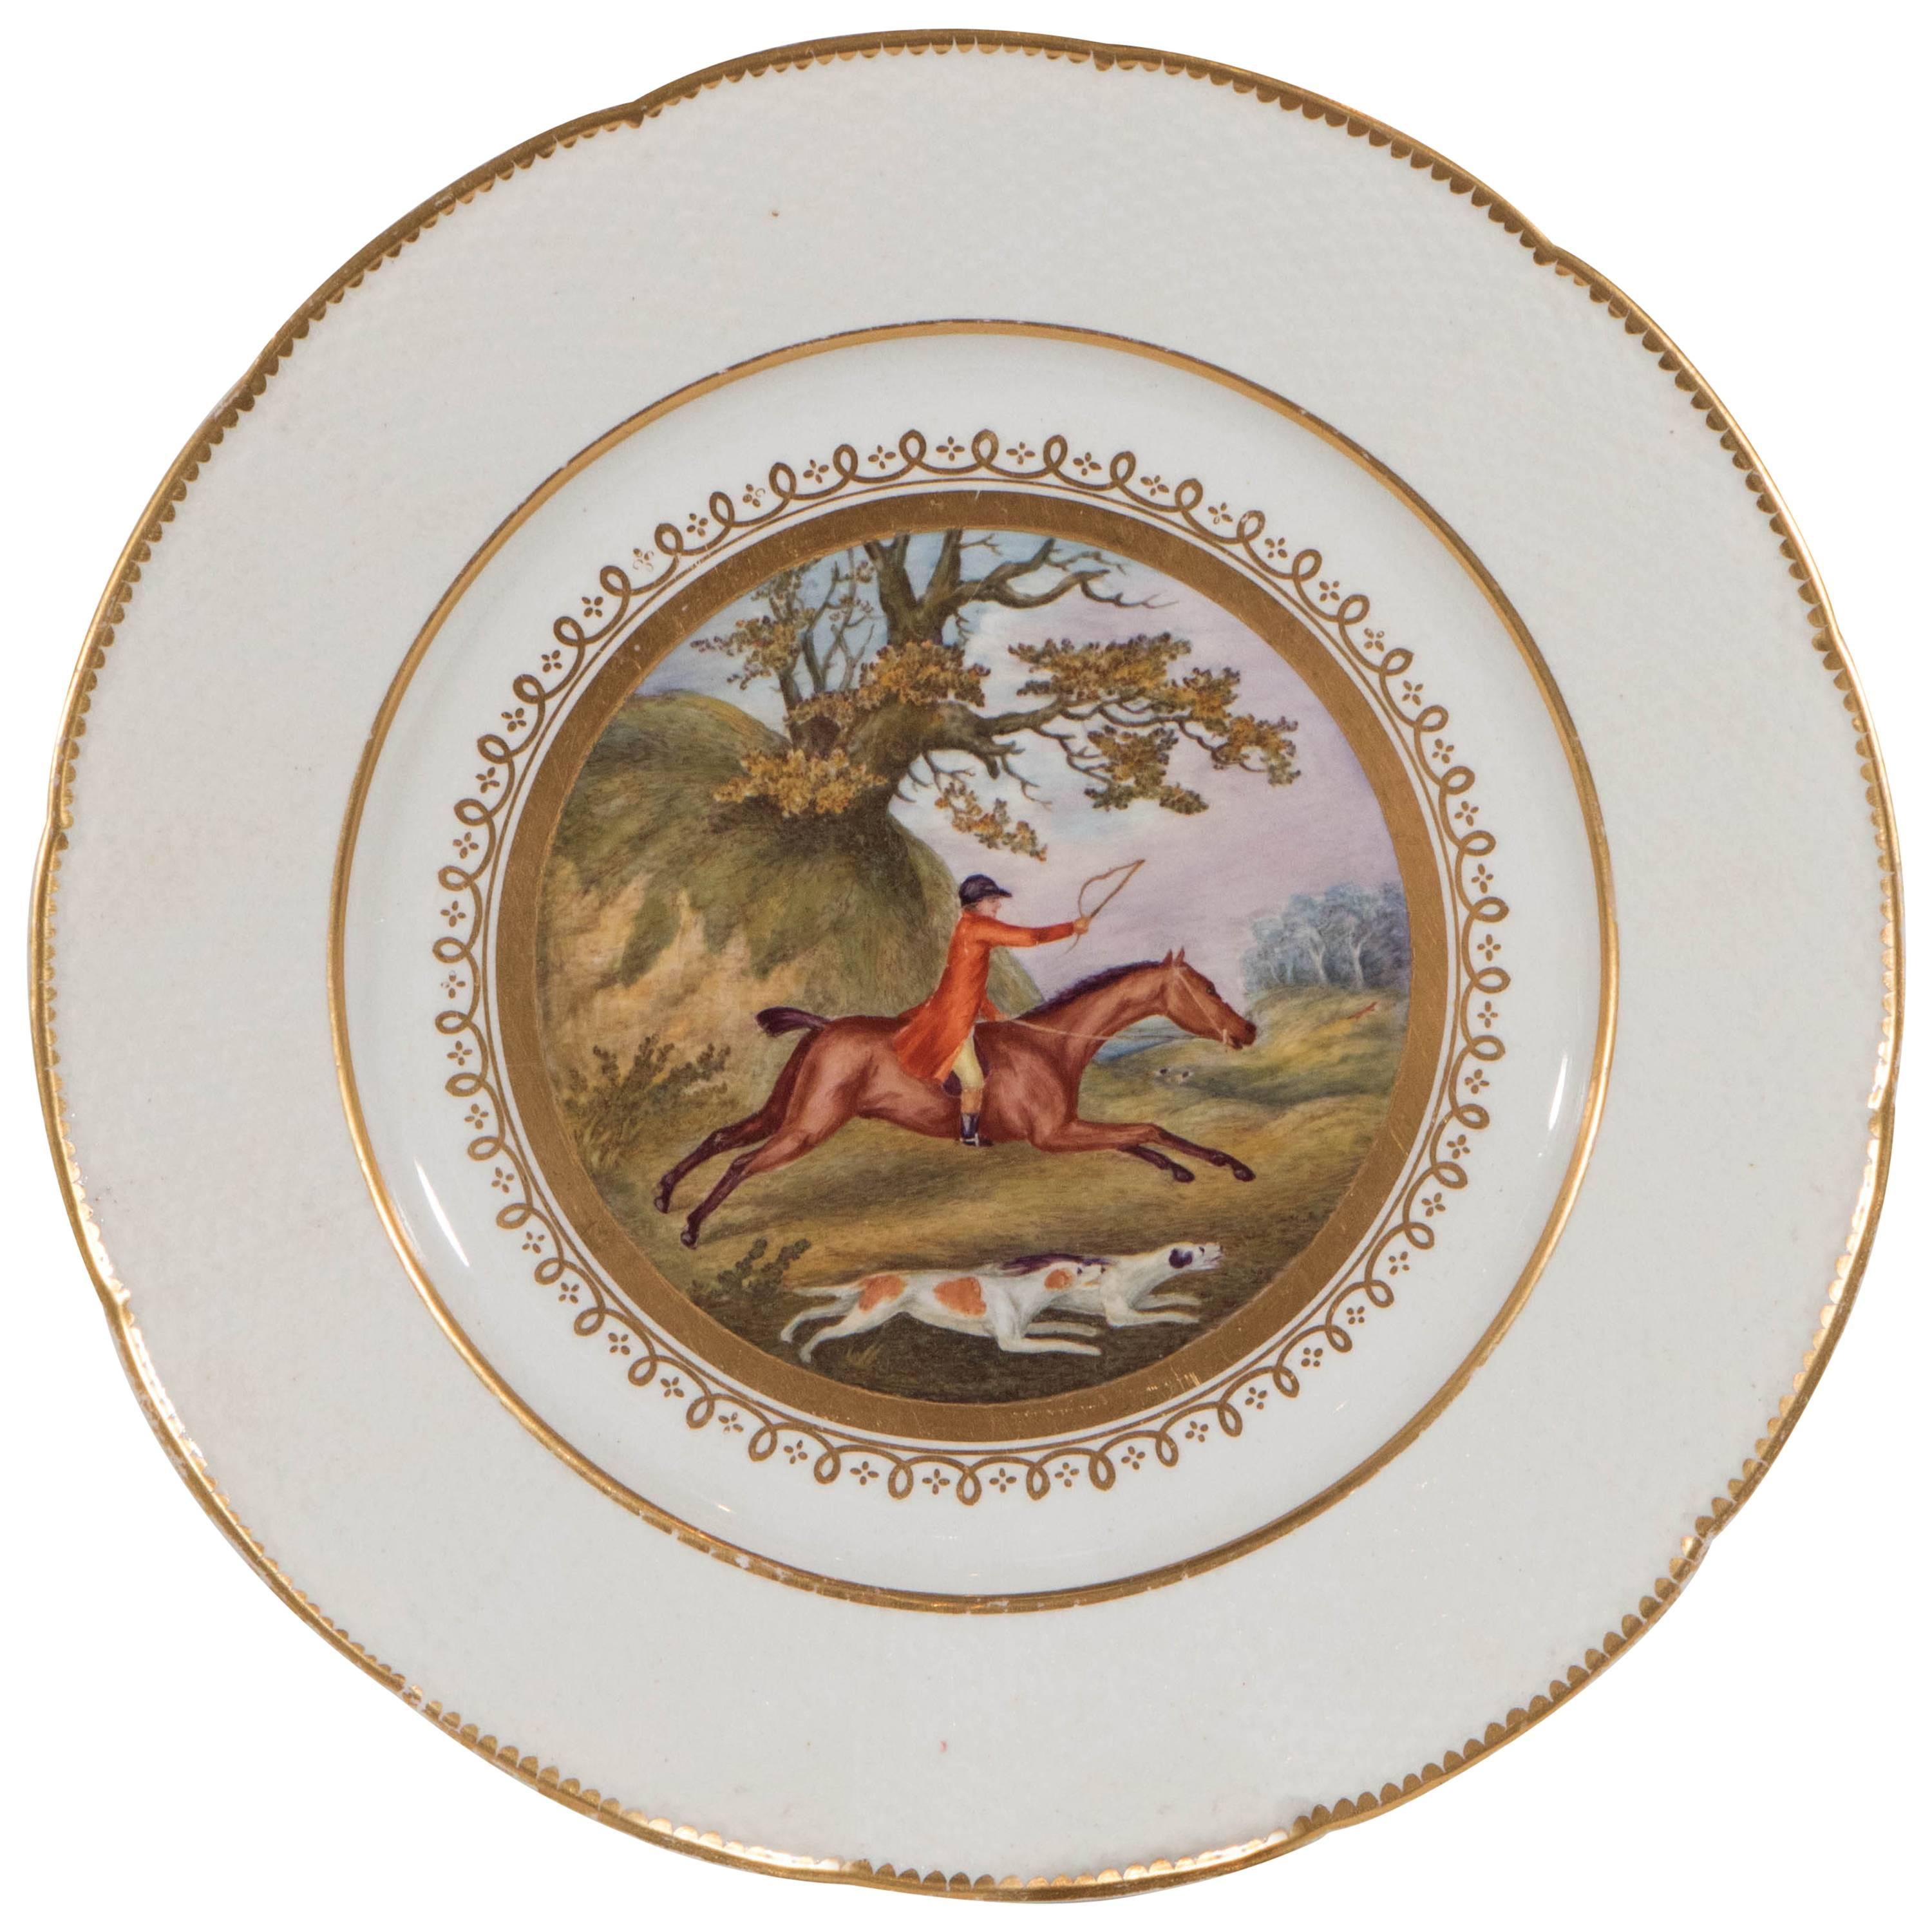 Handgemalte Fuchsjagd-Szene auf einem antiken englischen Teller um 1815